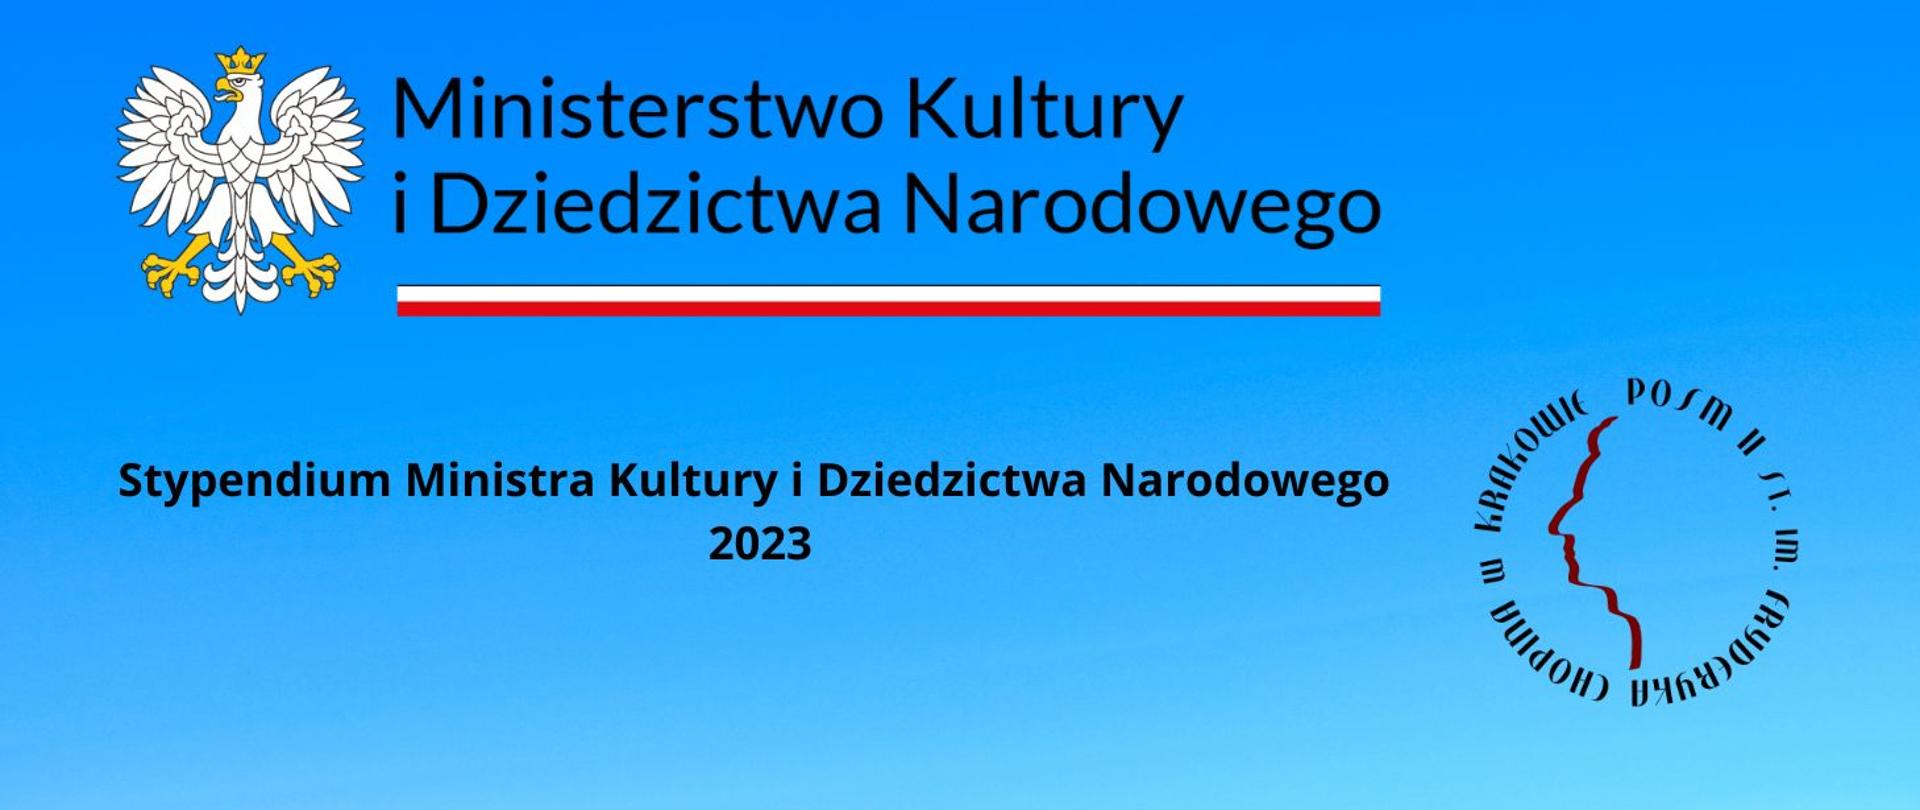 Baner, niebieskie tło, po lewej godło Polski, tekst: Ministerstwo Kultury i Dziedzictwa Narodowego, poniżej biało-czerwona wstęga, poniżej tekst: Stypendium Ministra Kultury i Dziedzictwa Narodowego 2023, w prawym dolnym rogu logo szkoły